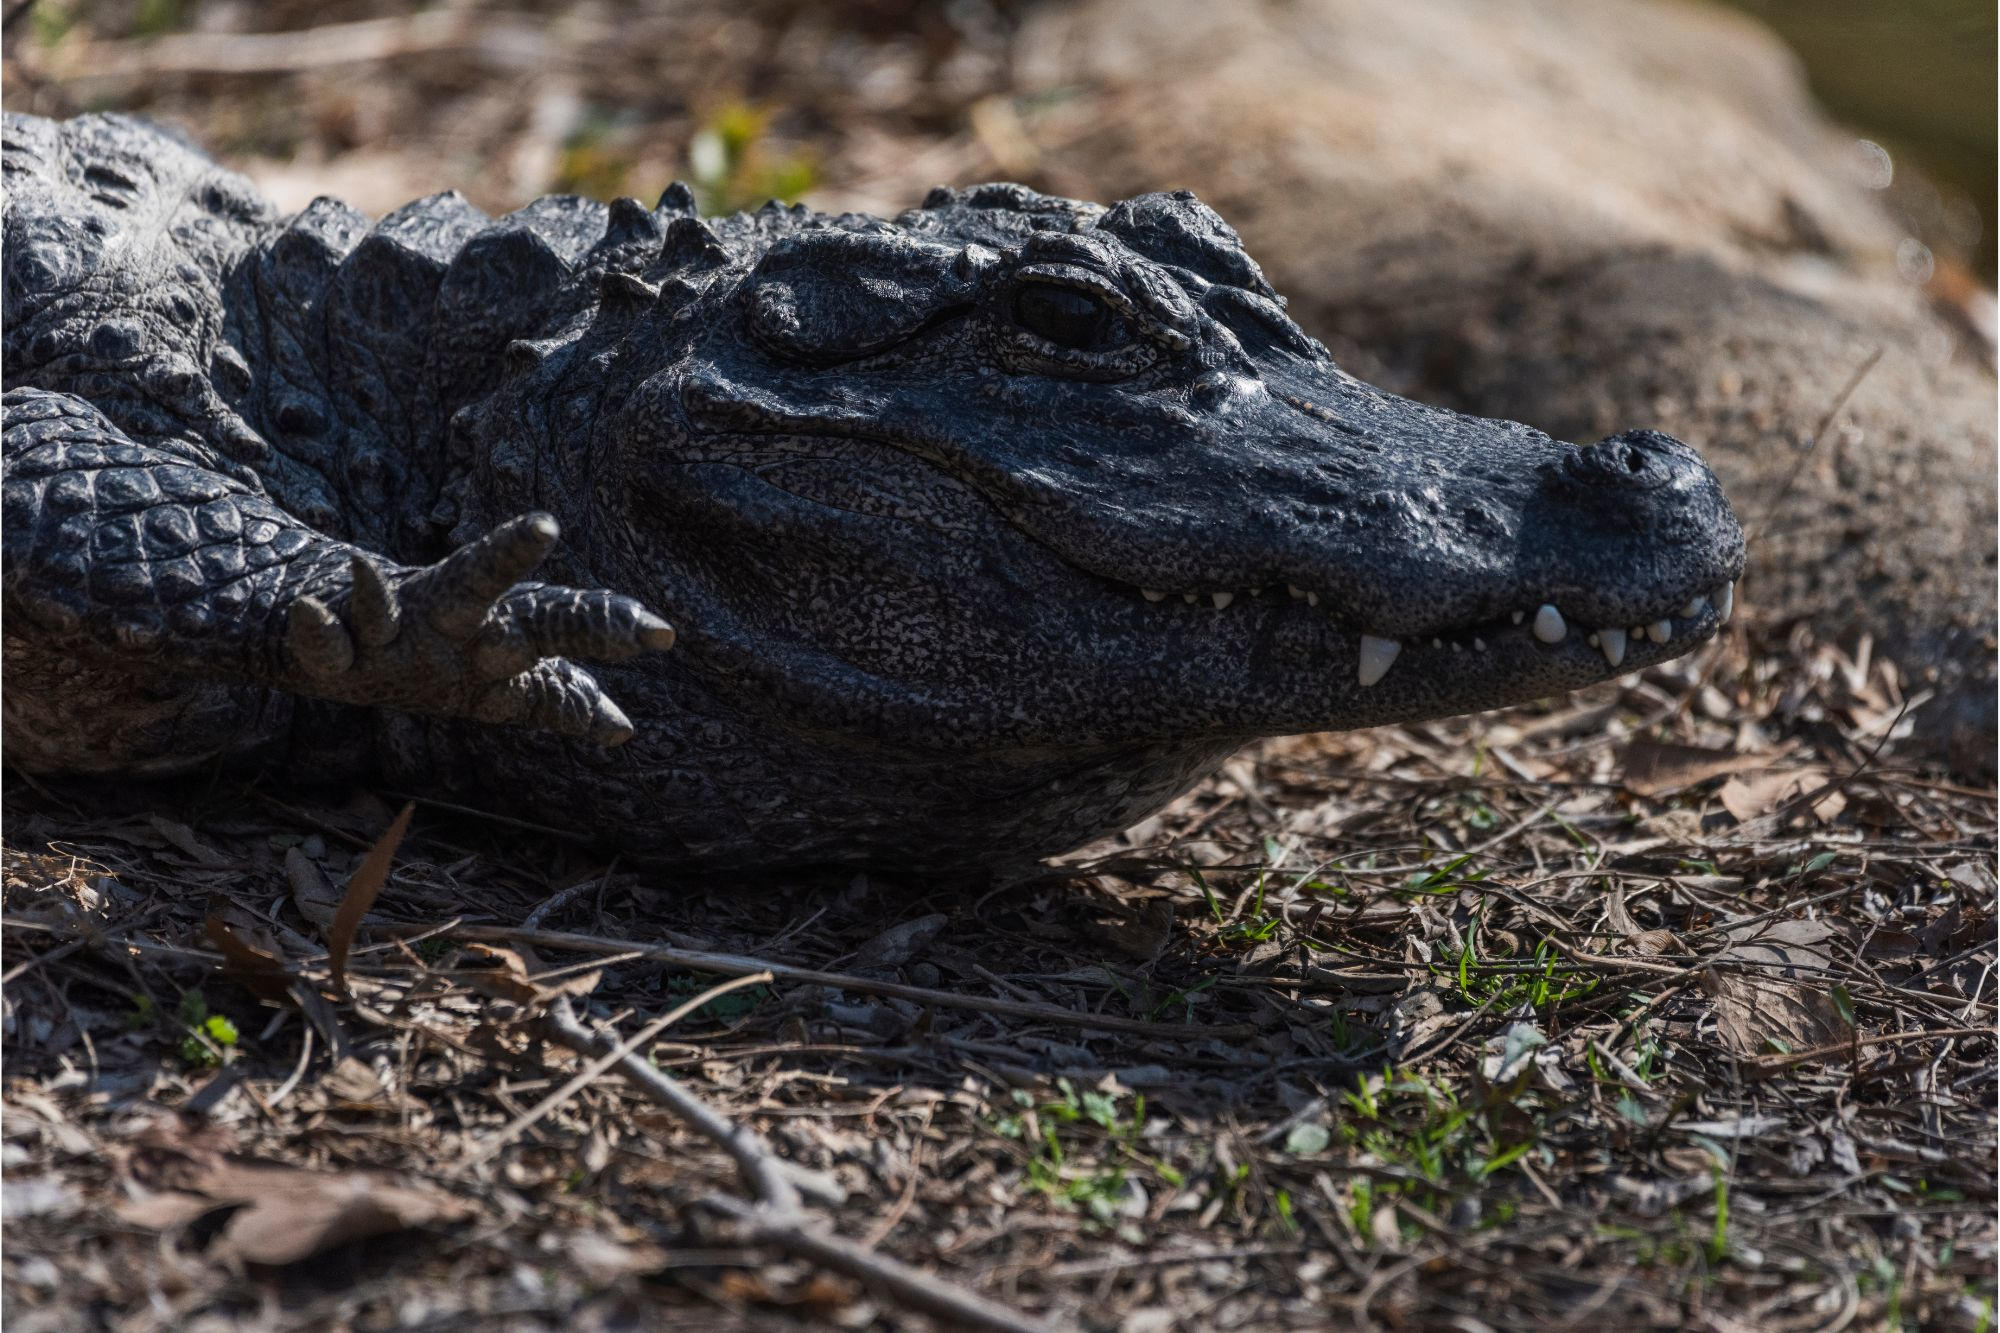 Wetenschappers hebben een nieuwe soort oude krokodil ontdekt